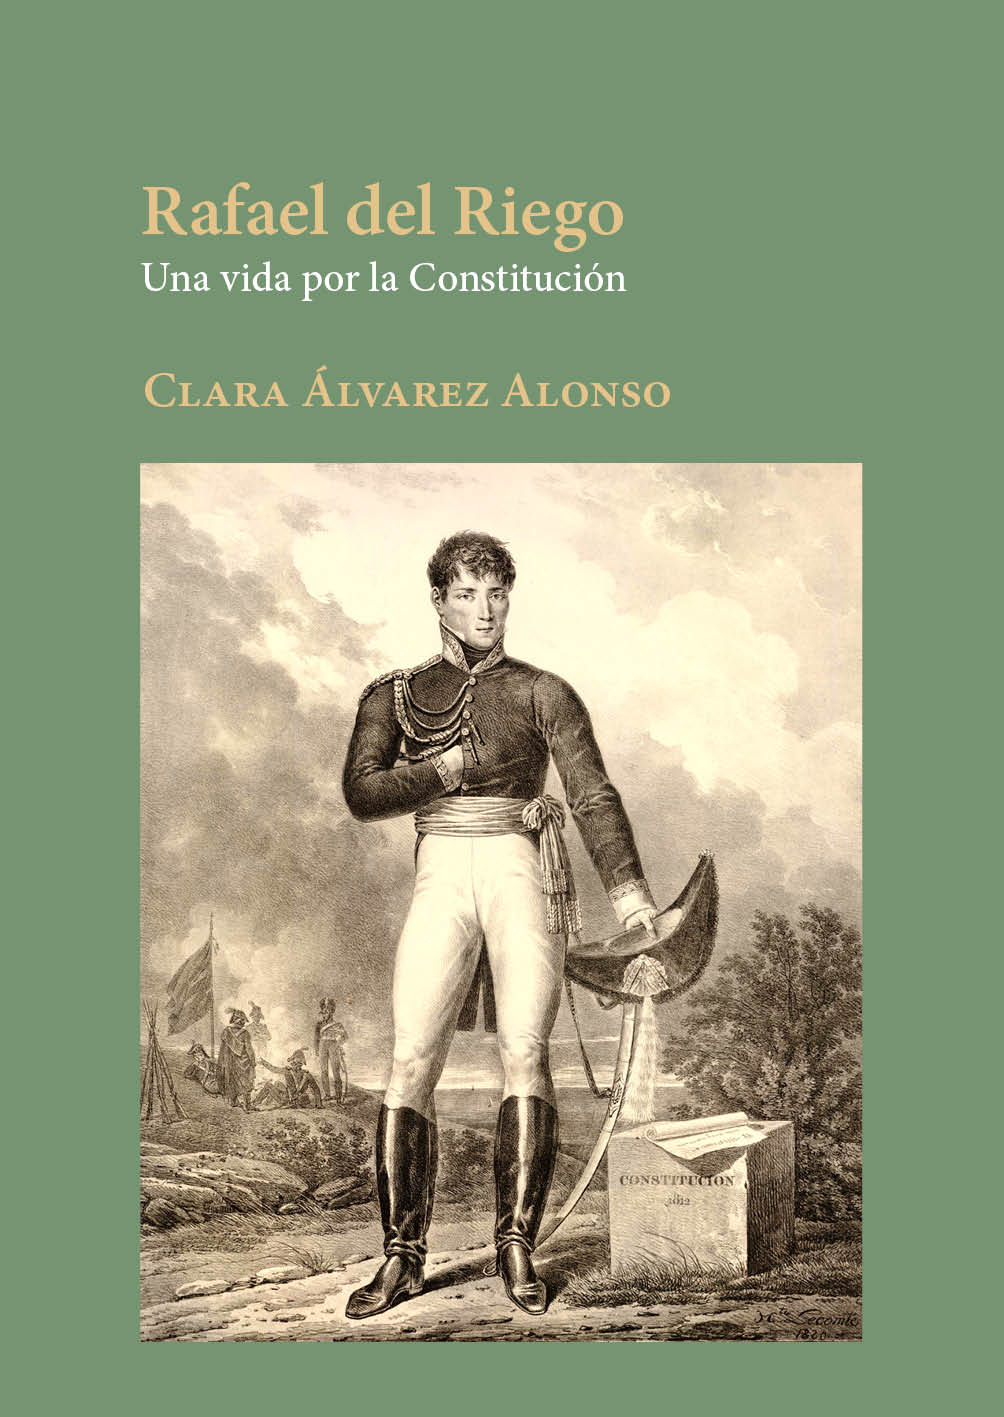 Imagen de portada del libro Rafael del Riego